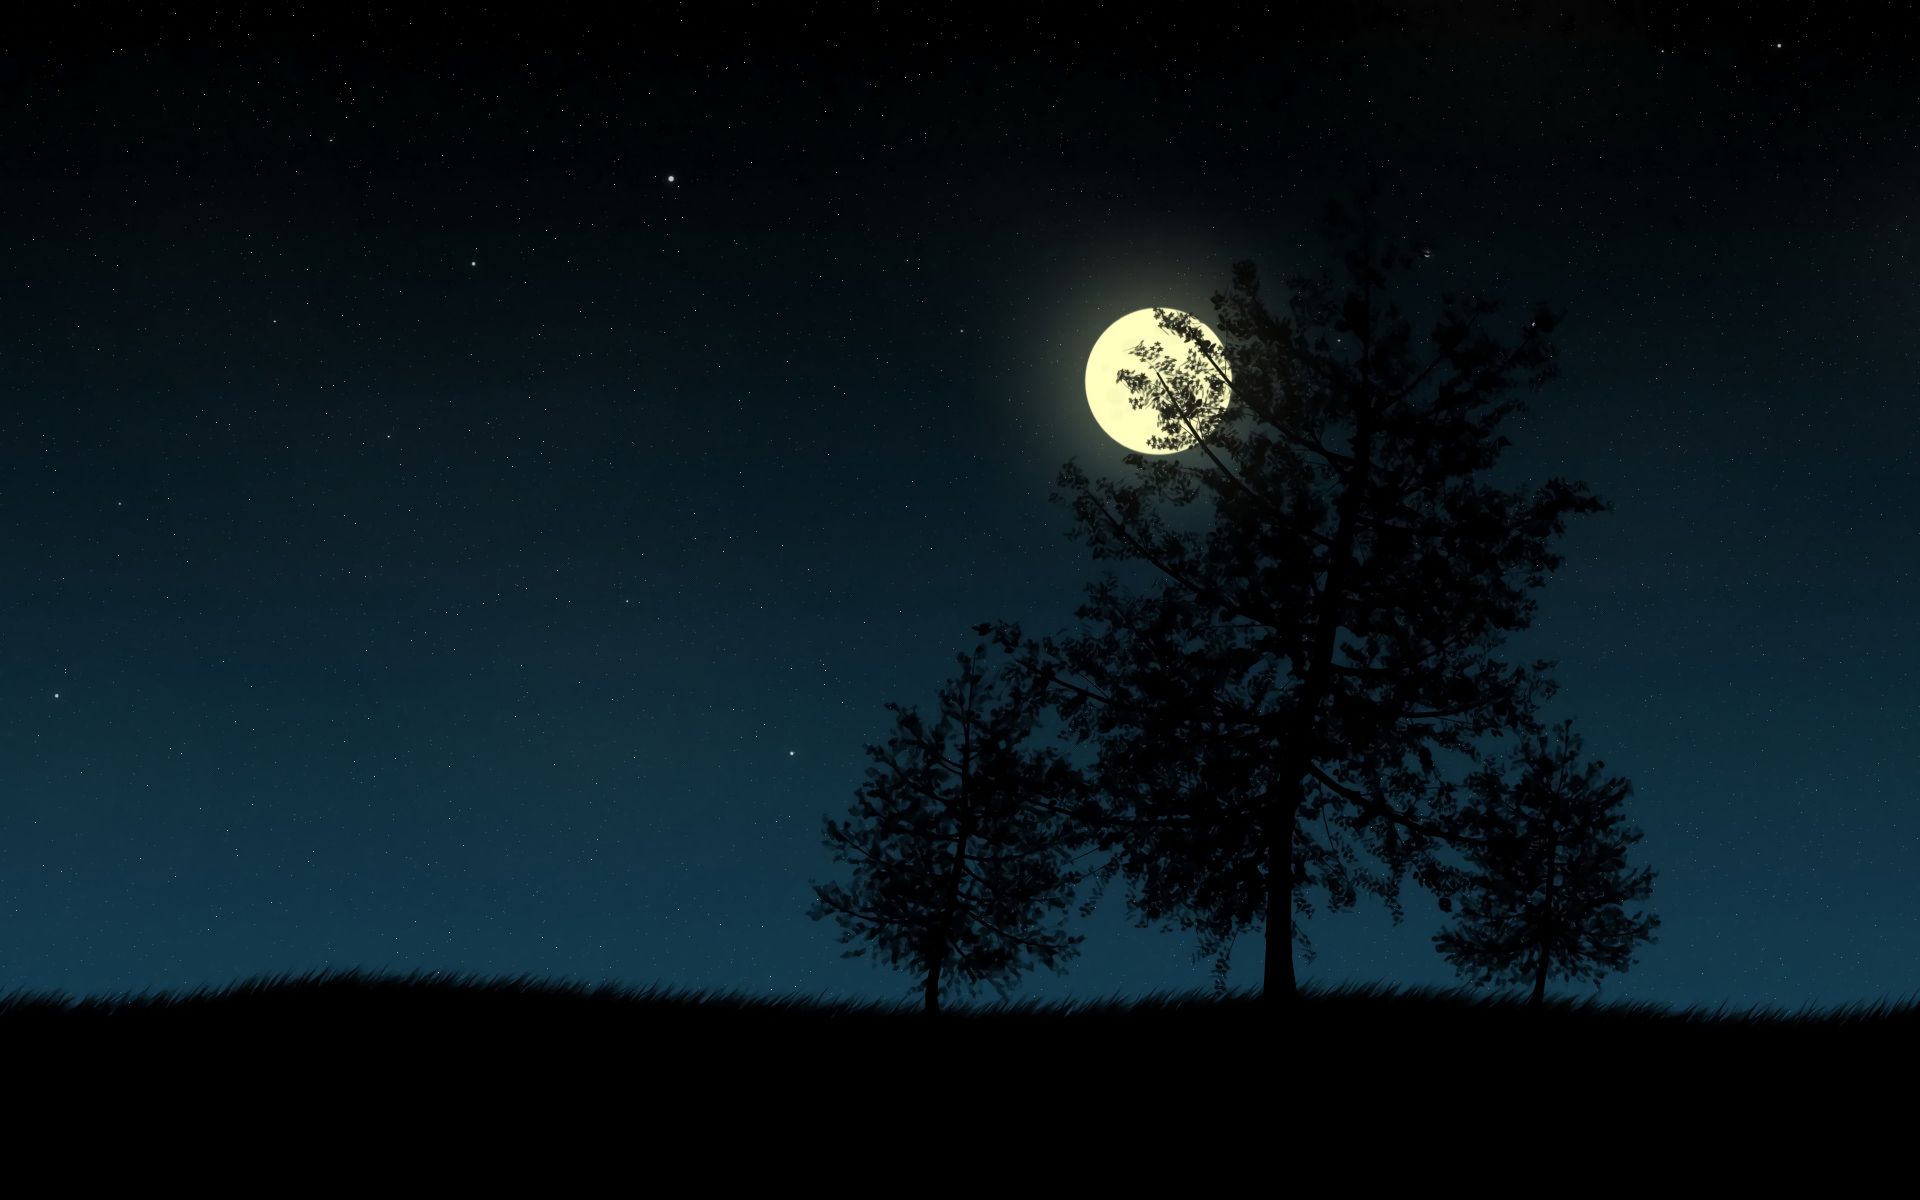 Скачать обои бесплатно Ночь, Луна, Дерево, Земля/природа картинка на рабочий стол ПК